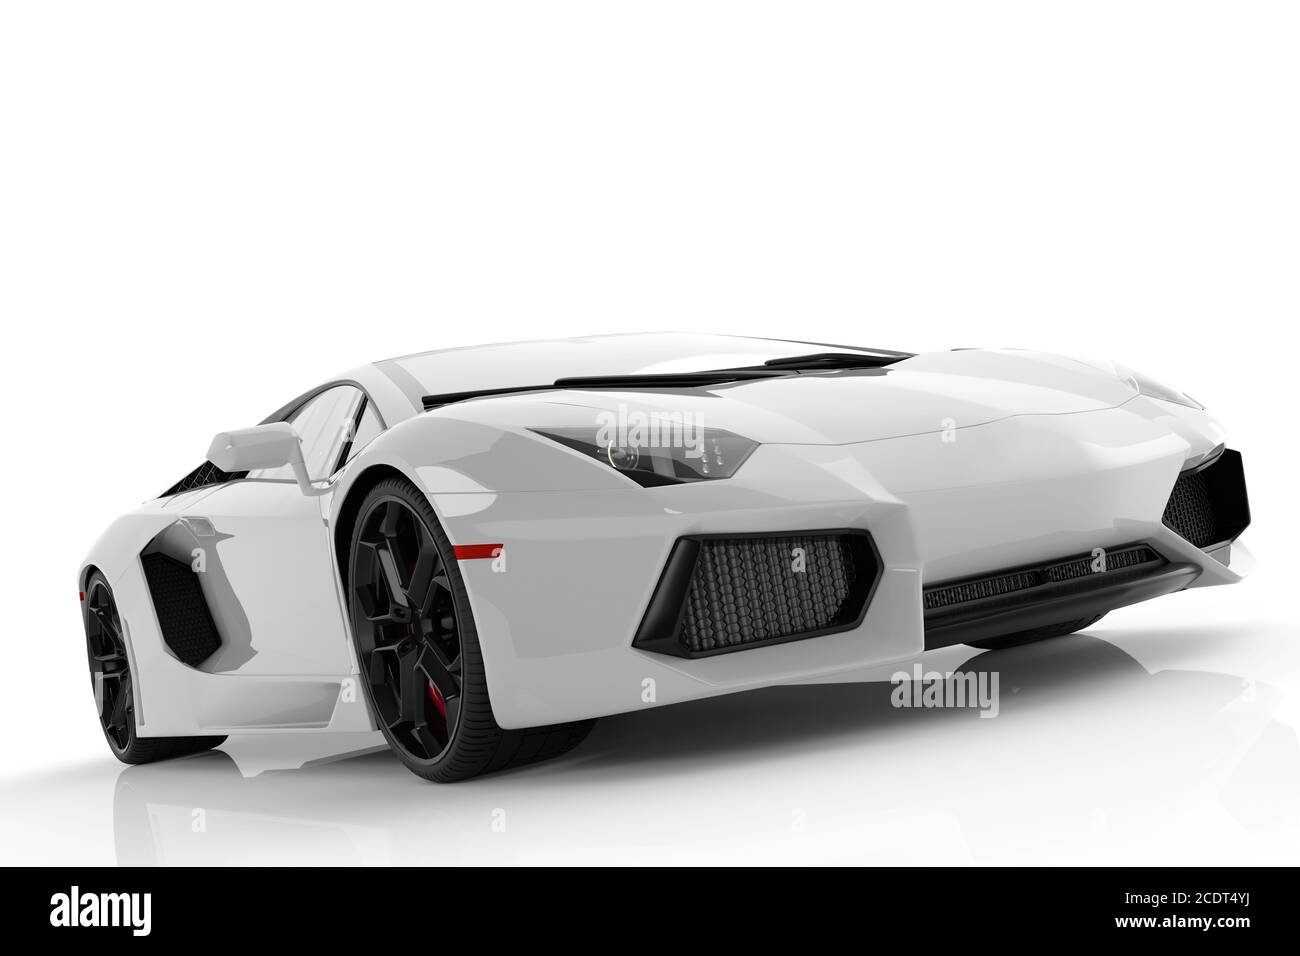 White metallic fast sports car on white background studio. Shiny, new, luxurious. Stock Photo